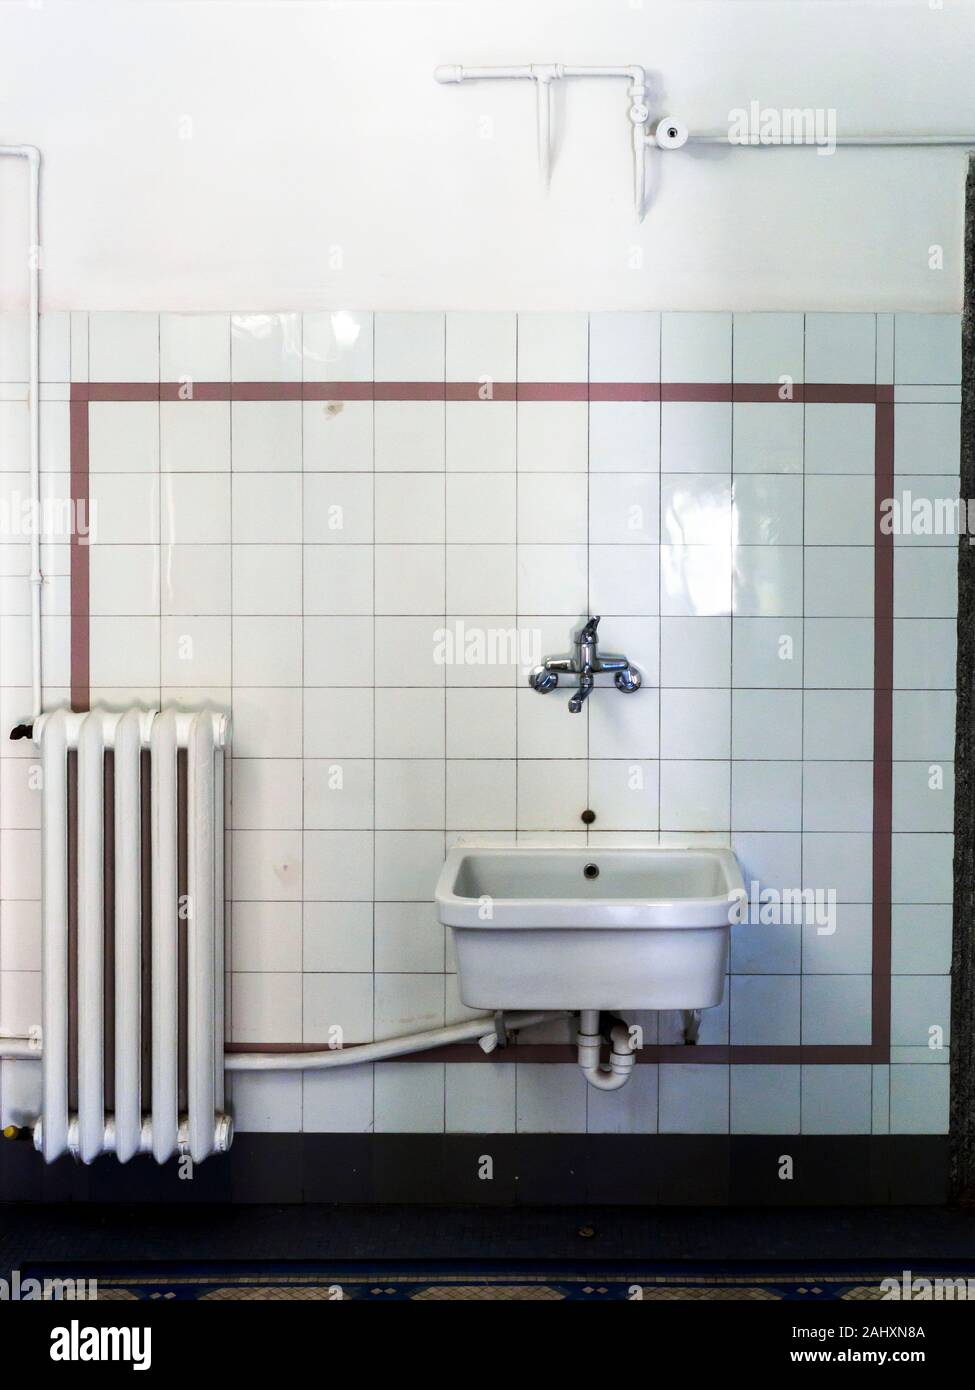 Il lavabo e il radiatore nel gabinetto di Villa Farnesina - Roma, Italia Foto Stock